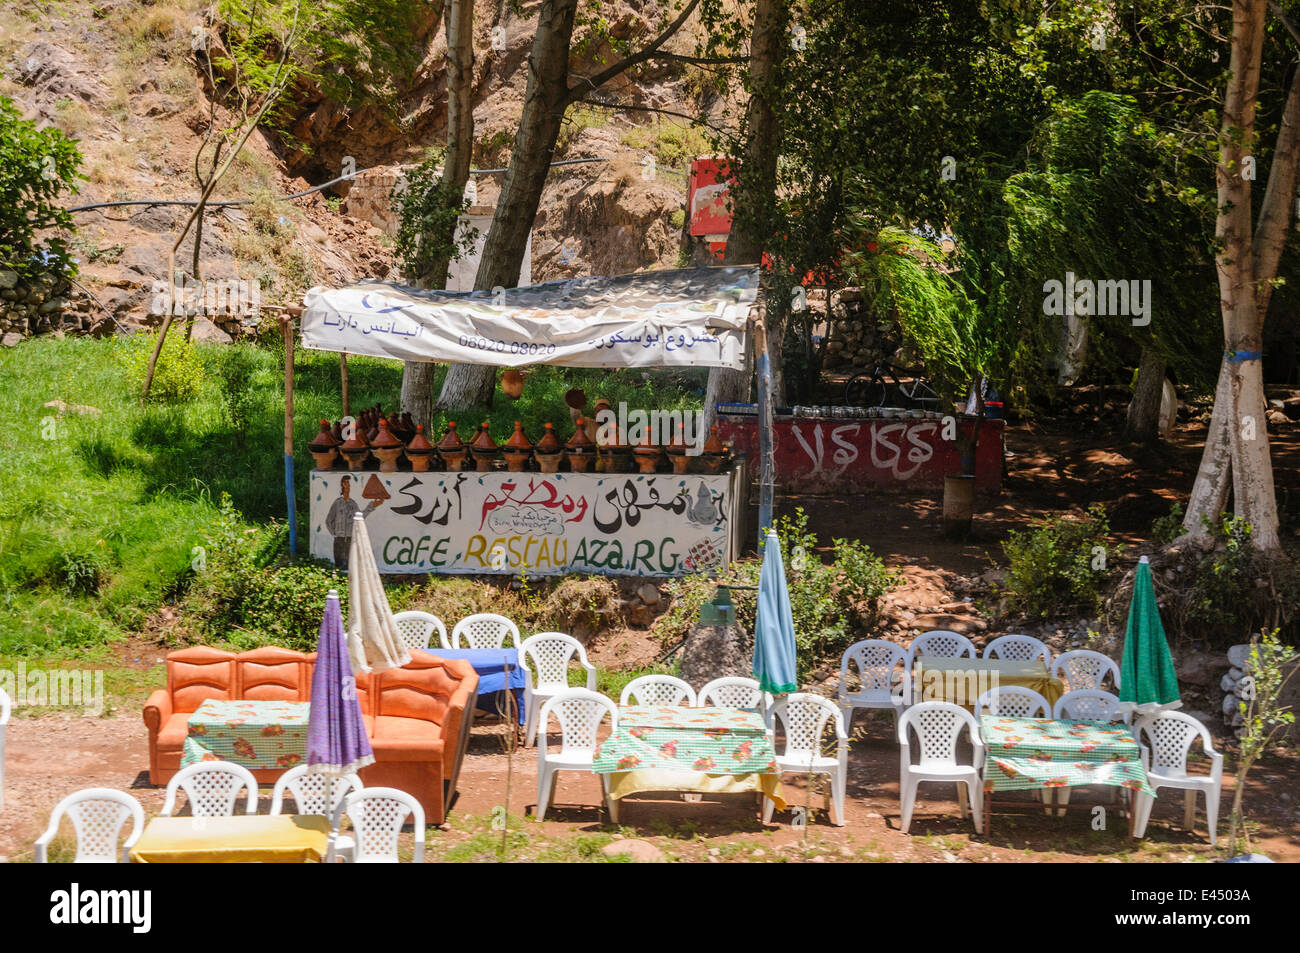 Mesas, sillas de plástico con sombrillas en los restaurantes a orillas del río Ourika, Valle de Ourika, las montañas del Atlas, Marruecos Foto de stock